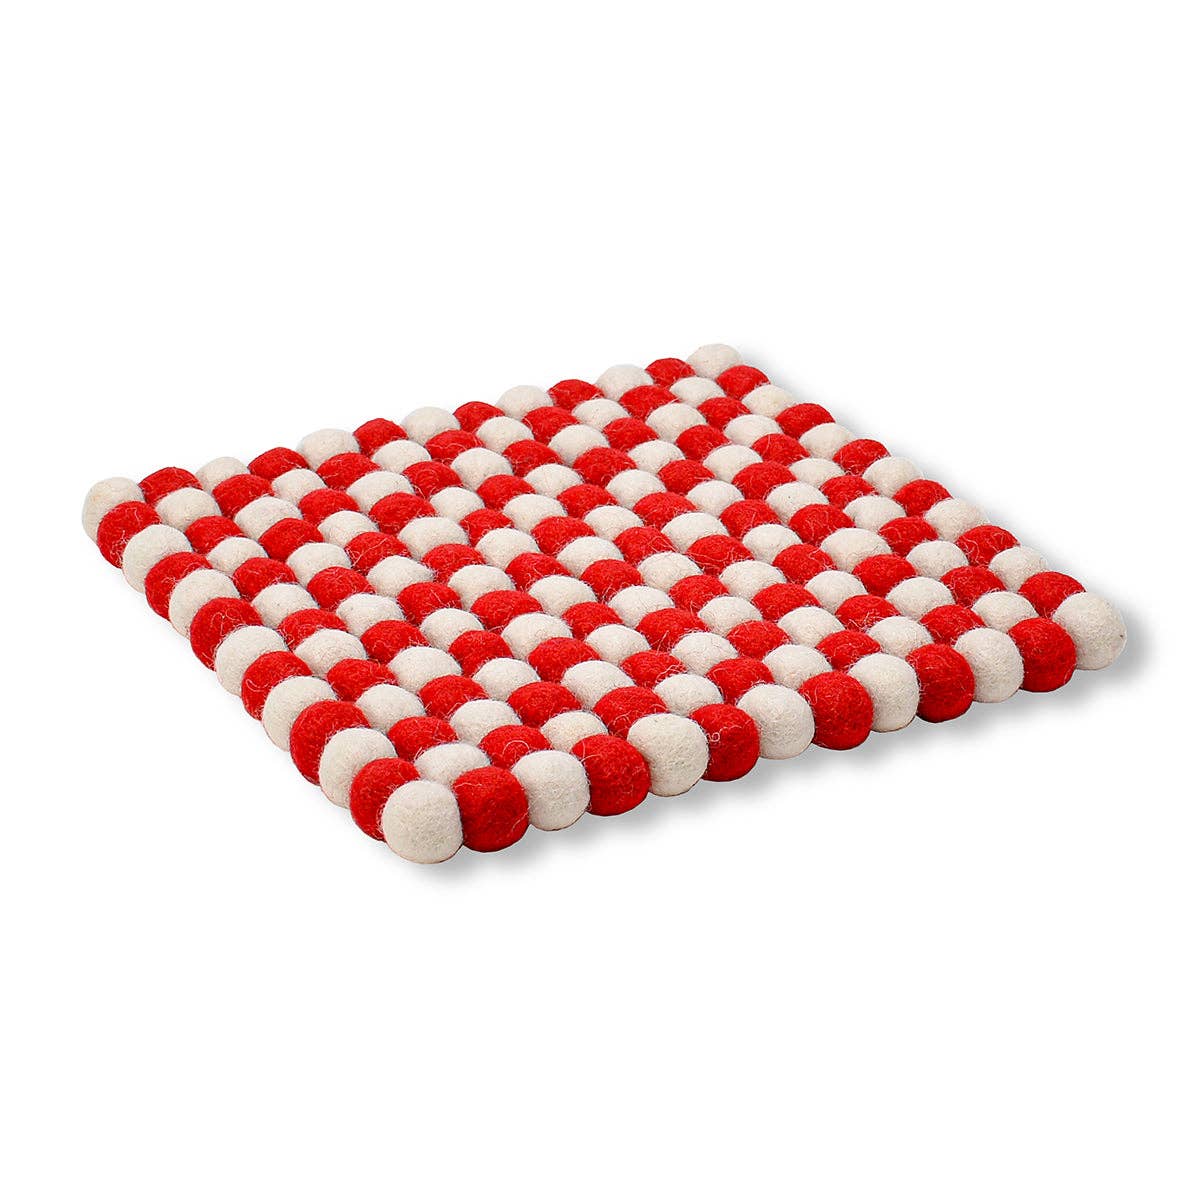 Trivet: Red & White Square Pom-pom Woll Felted Ball Trivet